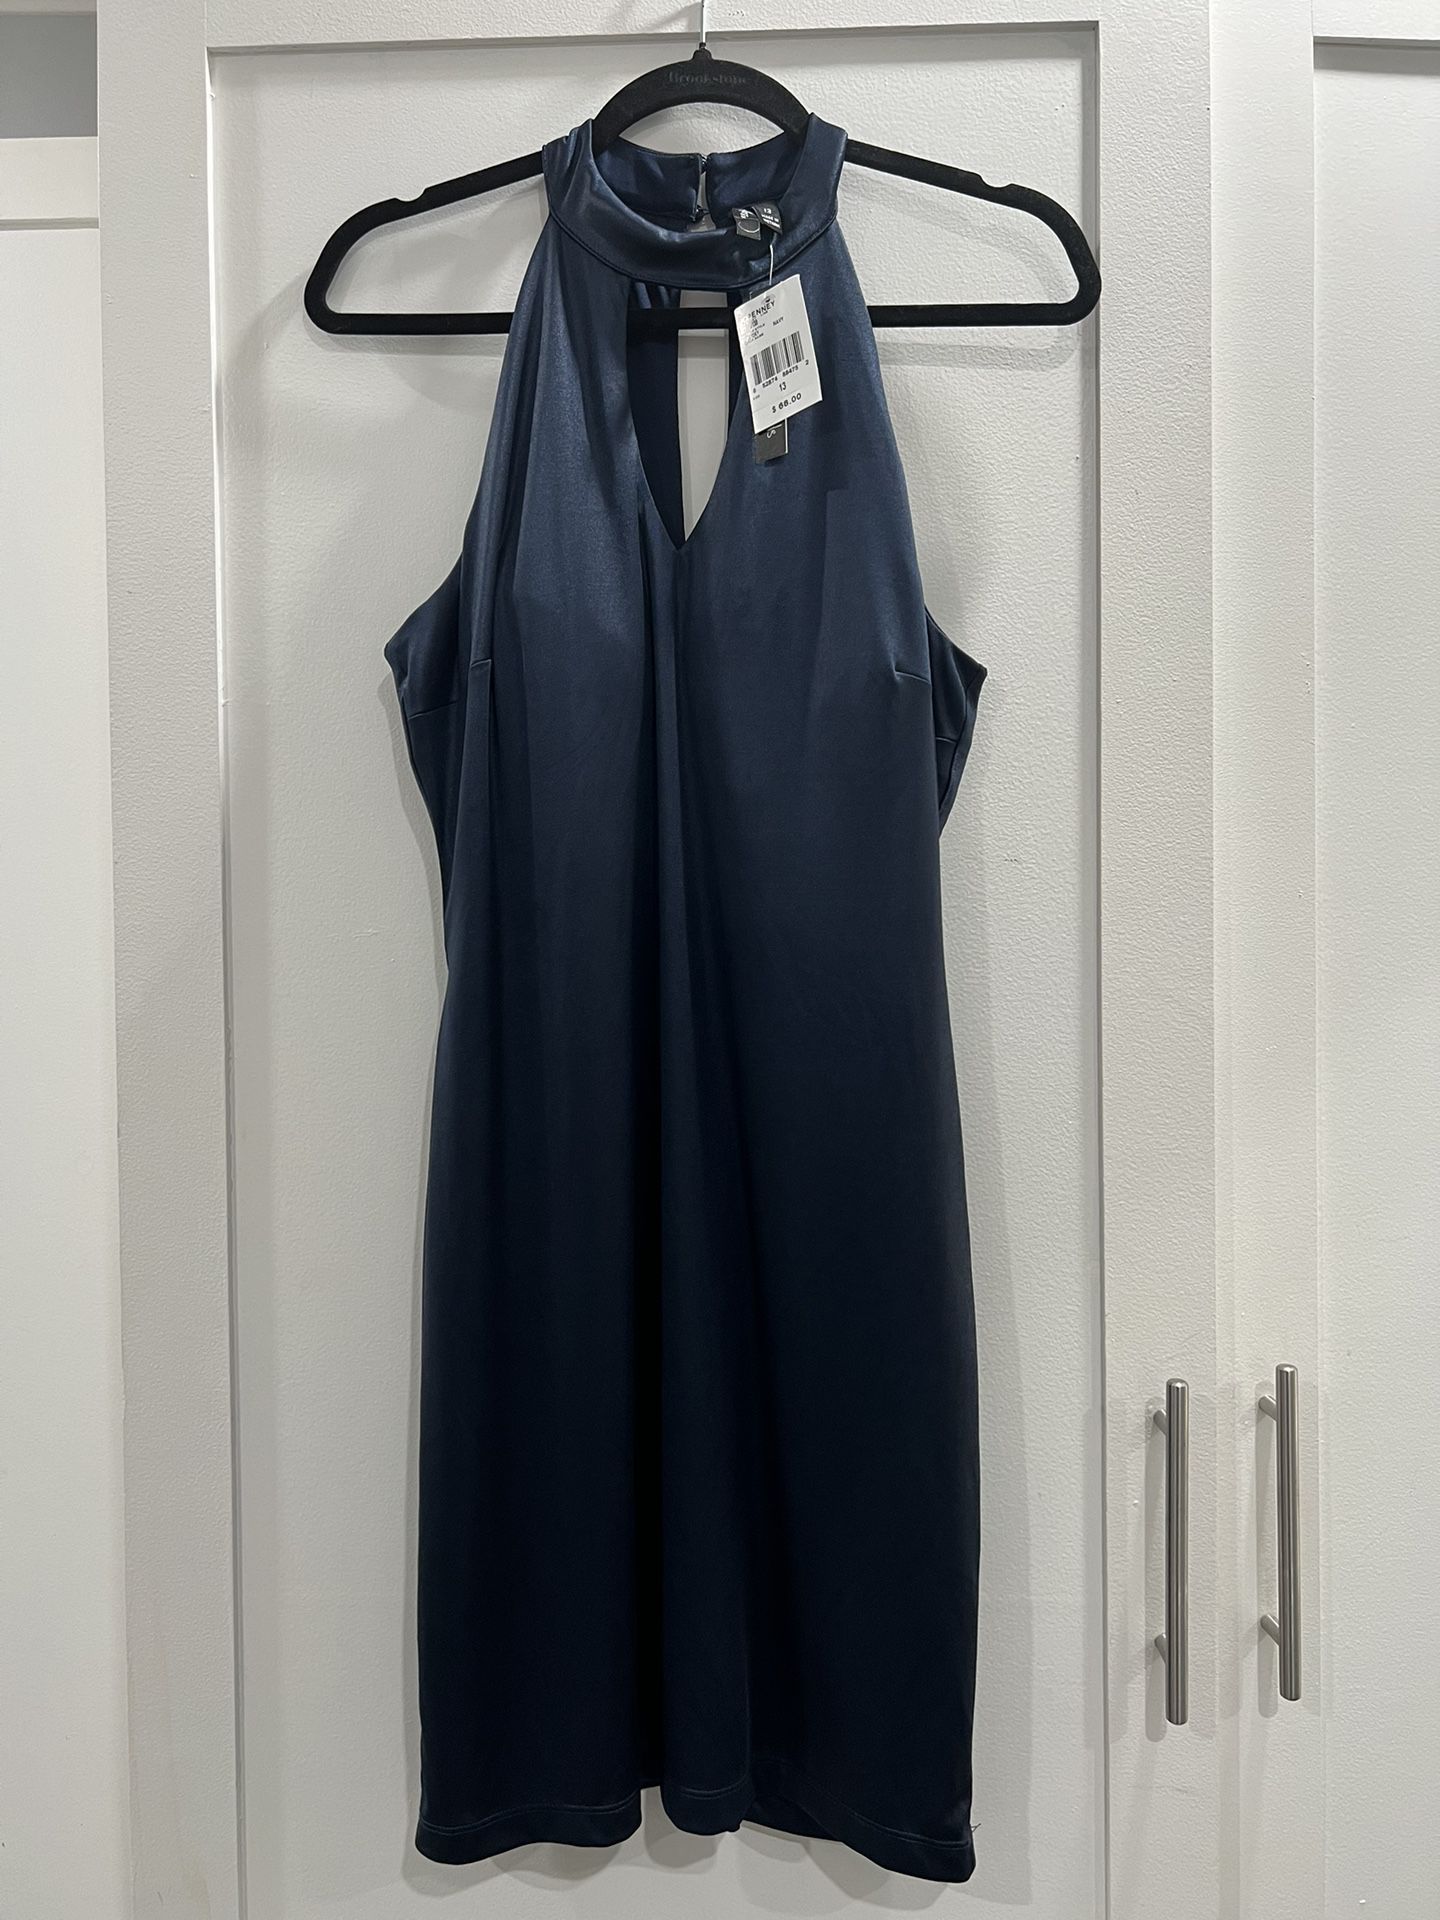 New women's navy blue dress